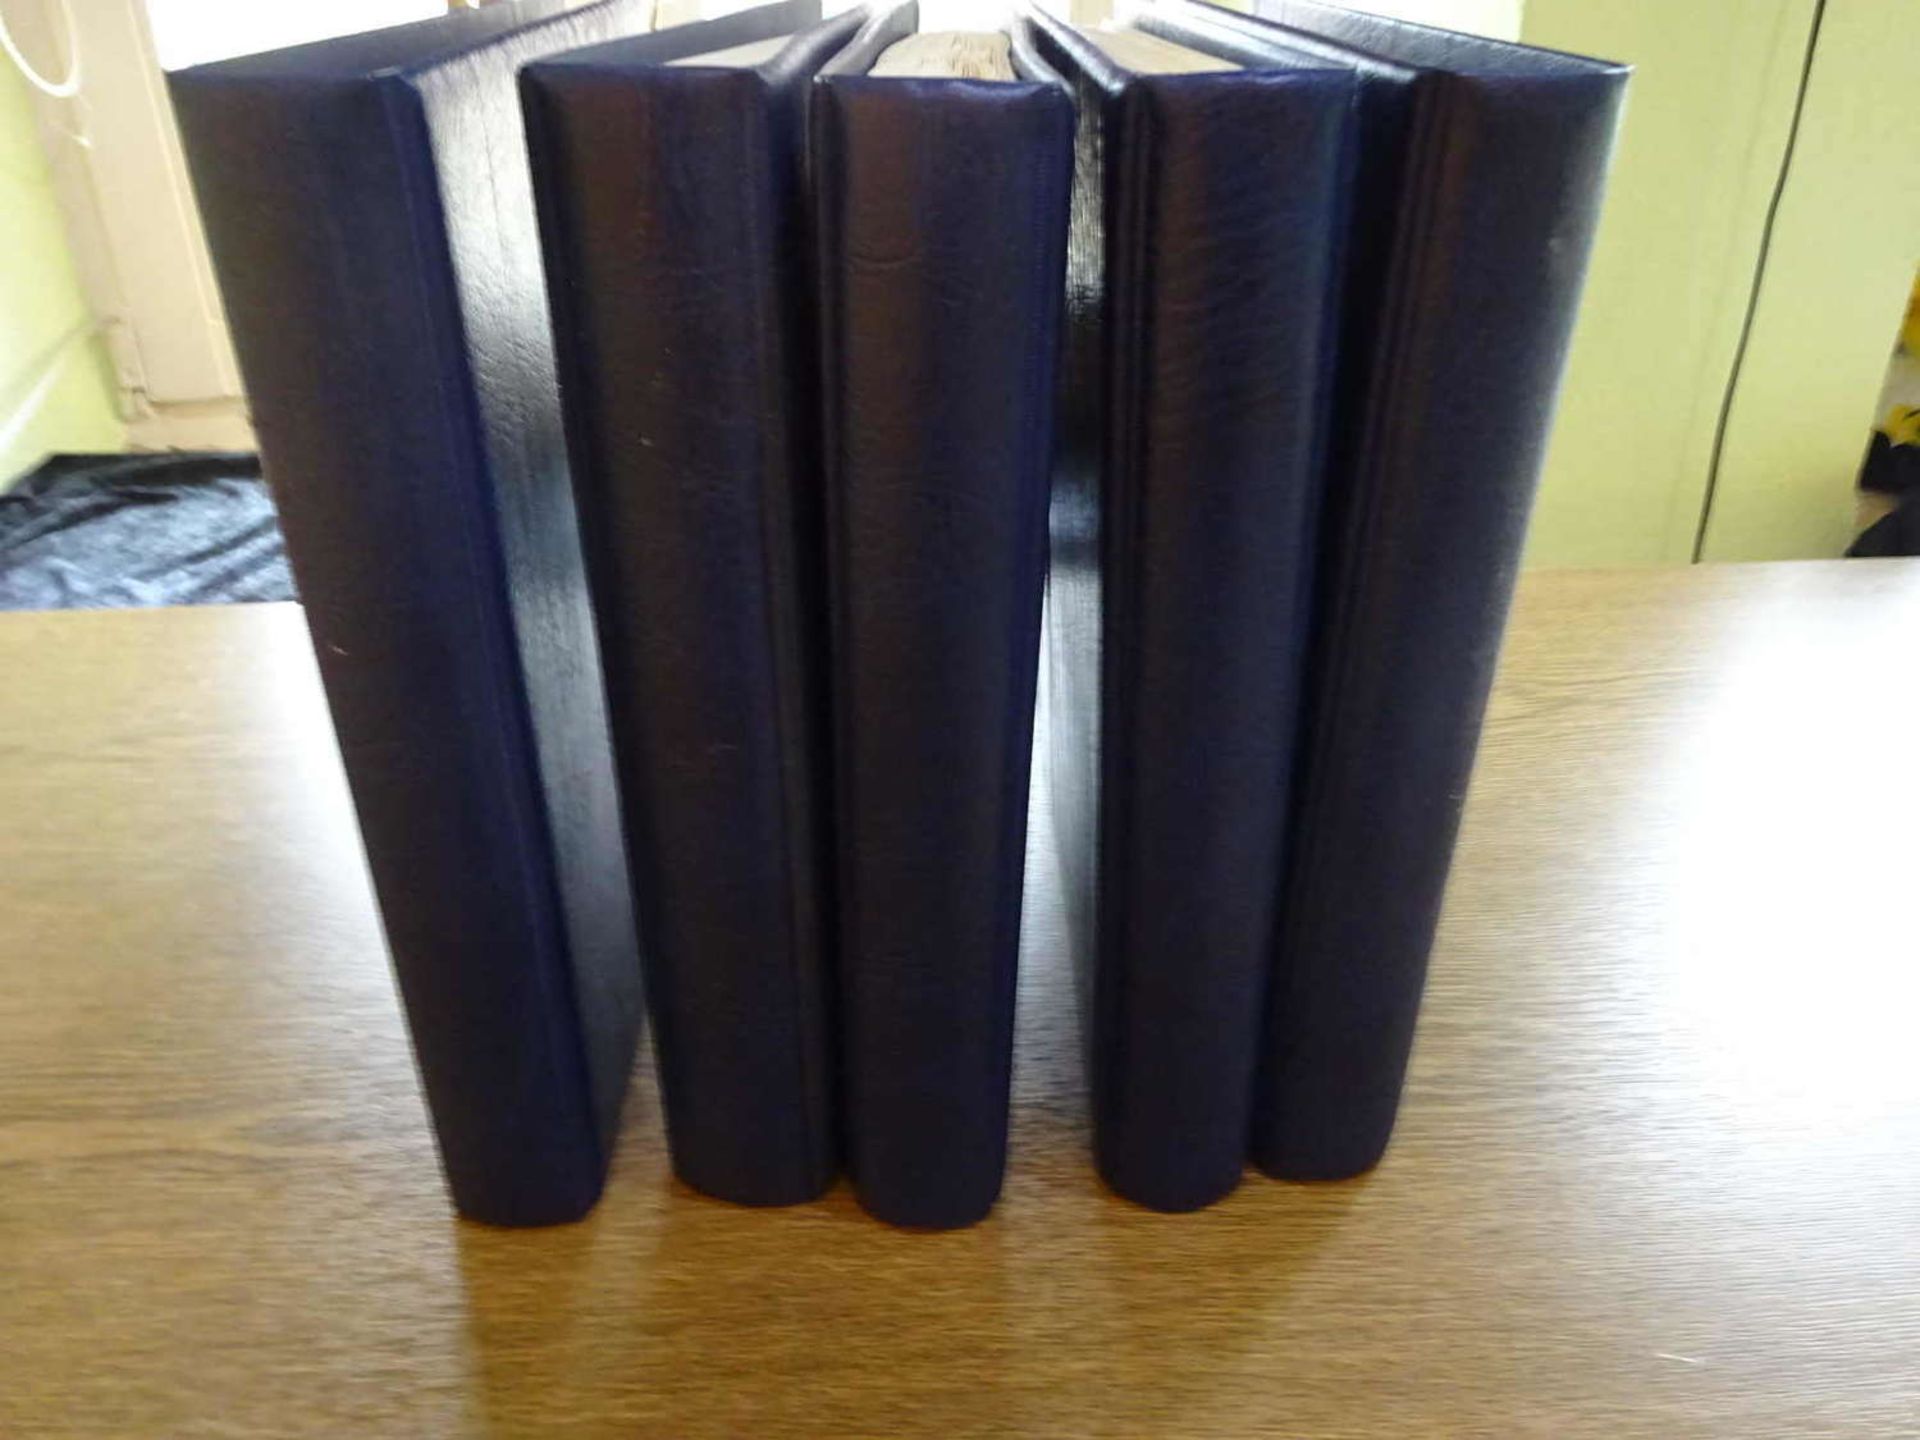 5 Kabe Vordruckalben BRD, Teilsammlung 1949-1996, Postfrisch und gestempelt.5 Kabe printed form